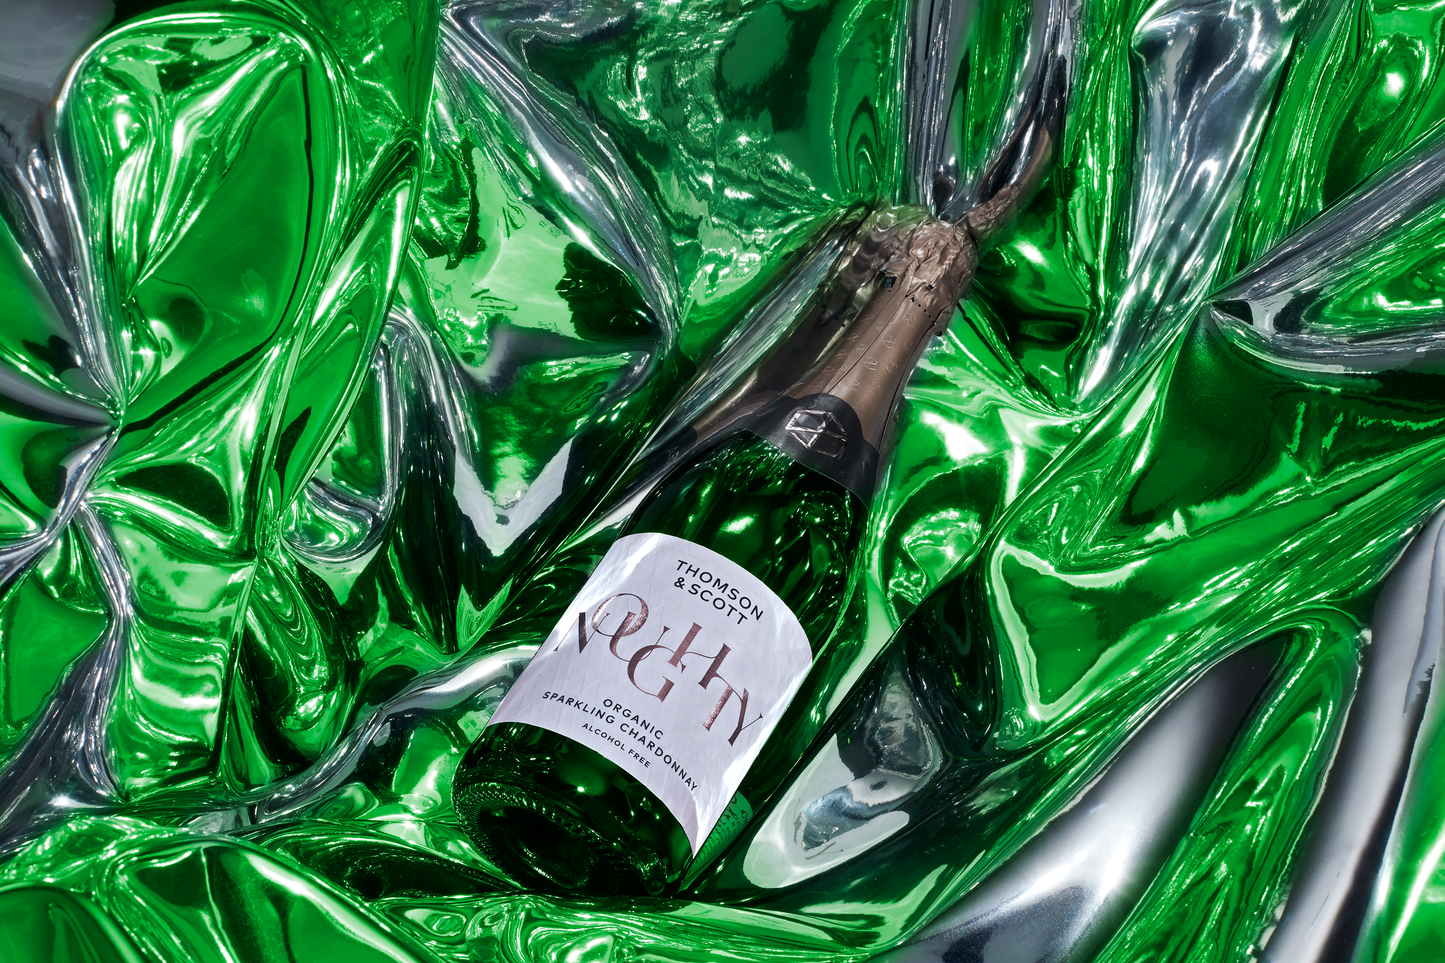 Thomson & Scott Noughty Sparkling Chardonnay